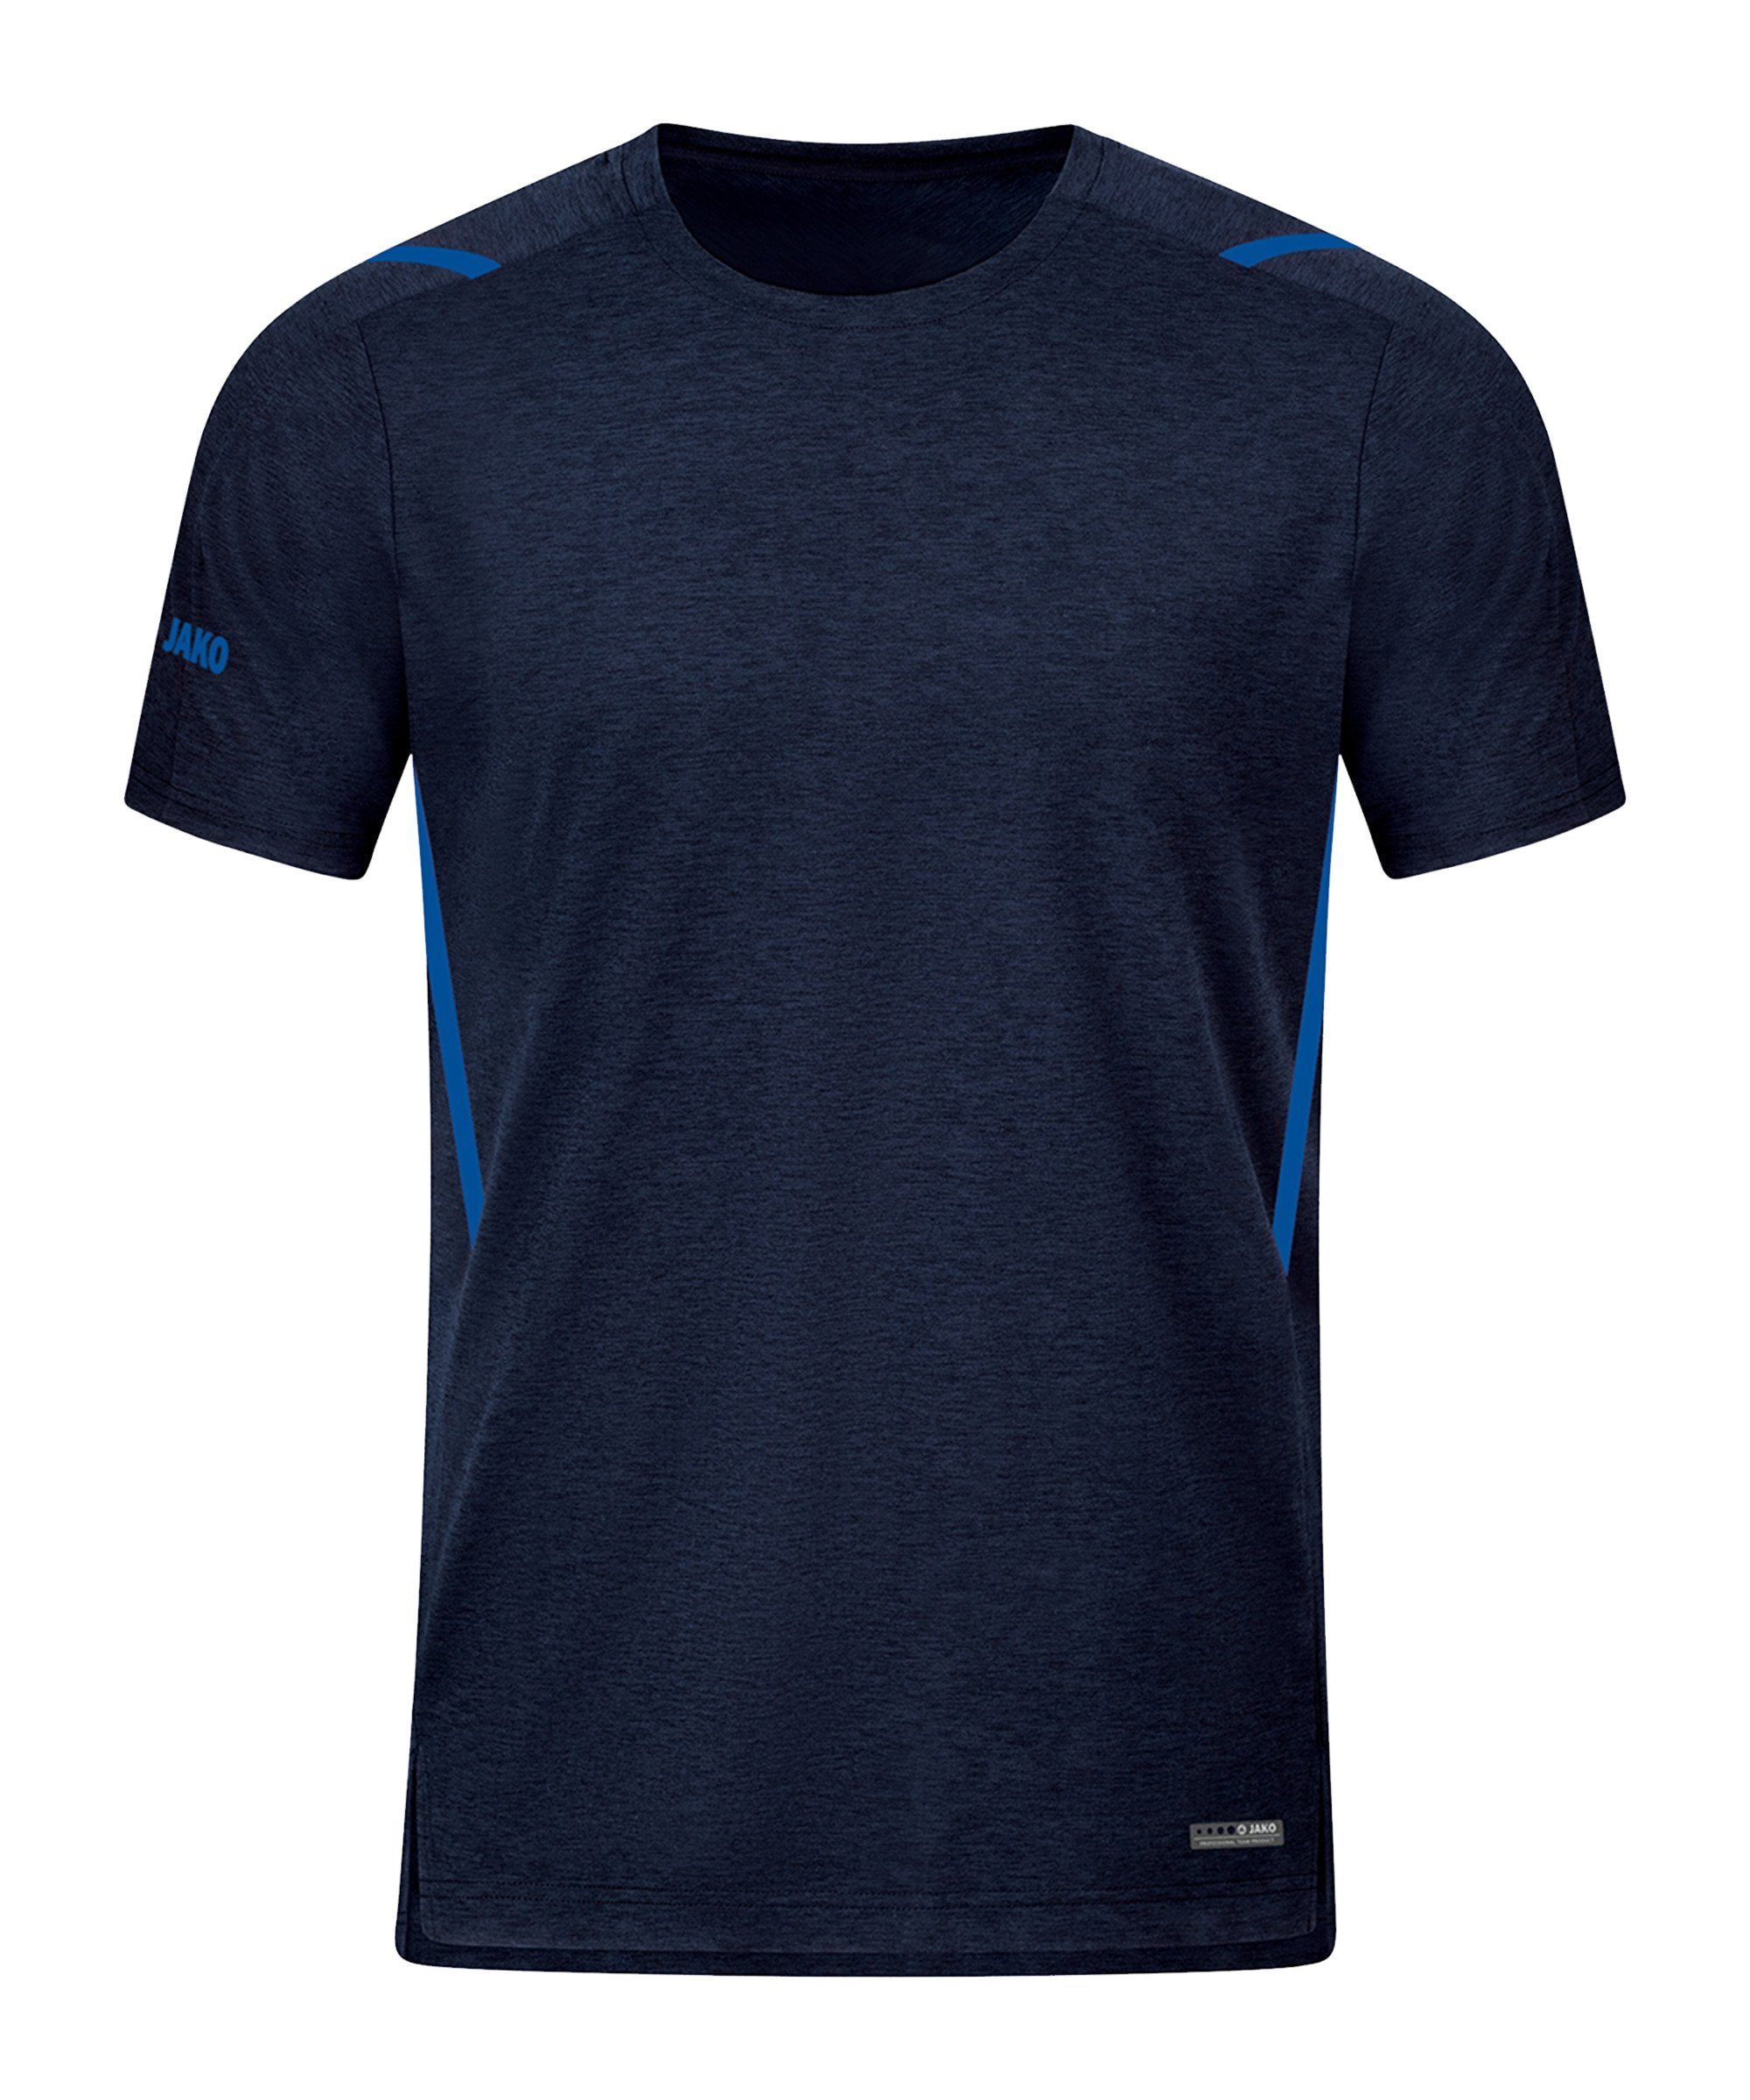 Jako T-Shirt Challenge Freizeit T-Shirt default blaublau